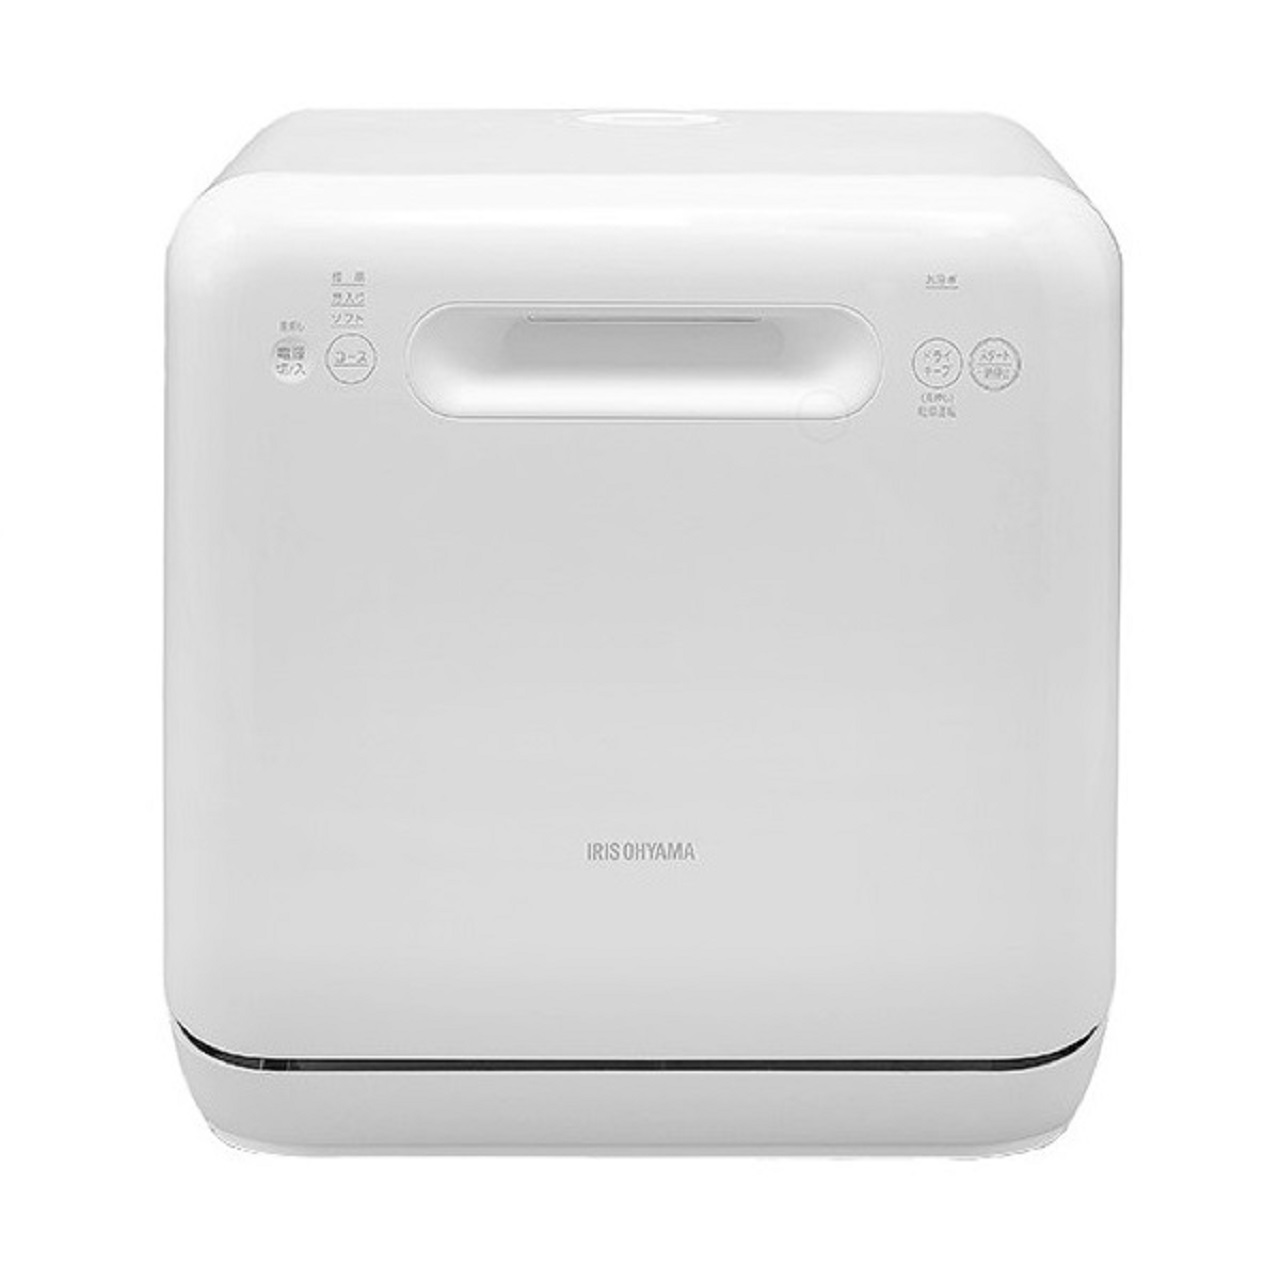 アイリスオーヤマISHT-5000食器洗い乾燥機